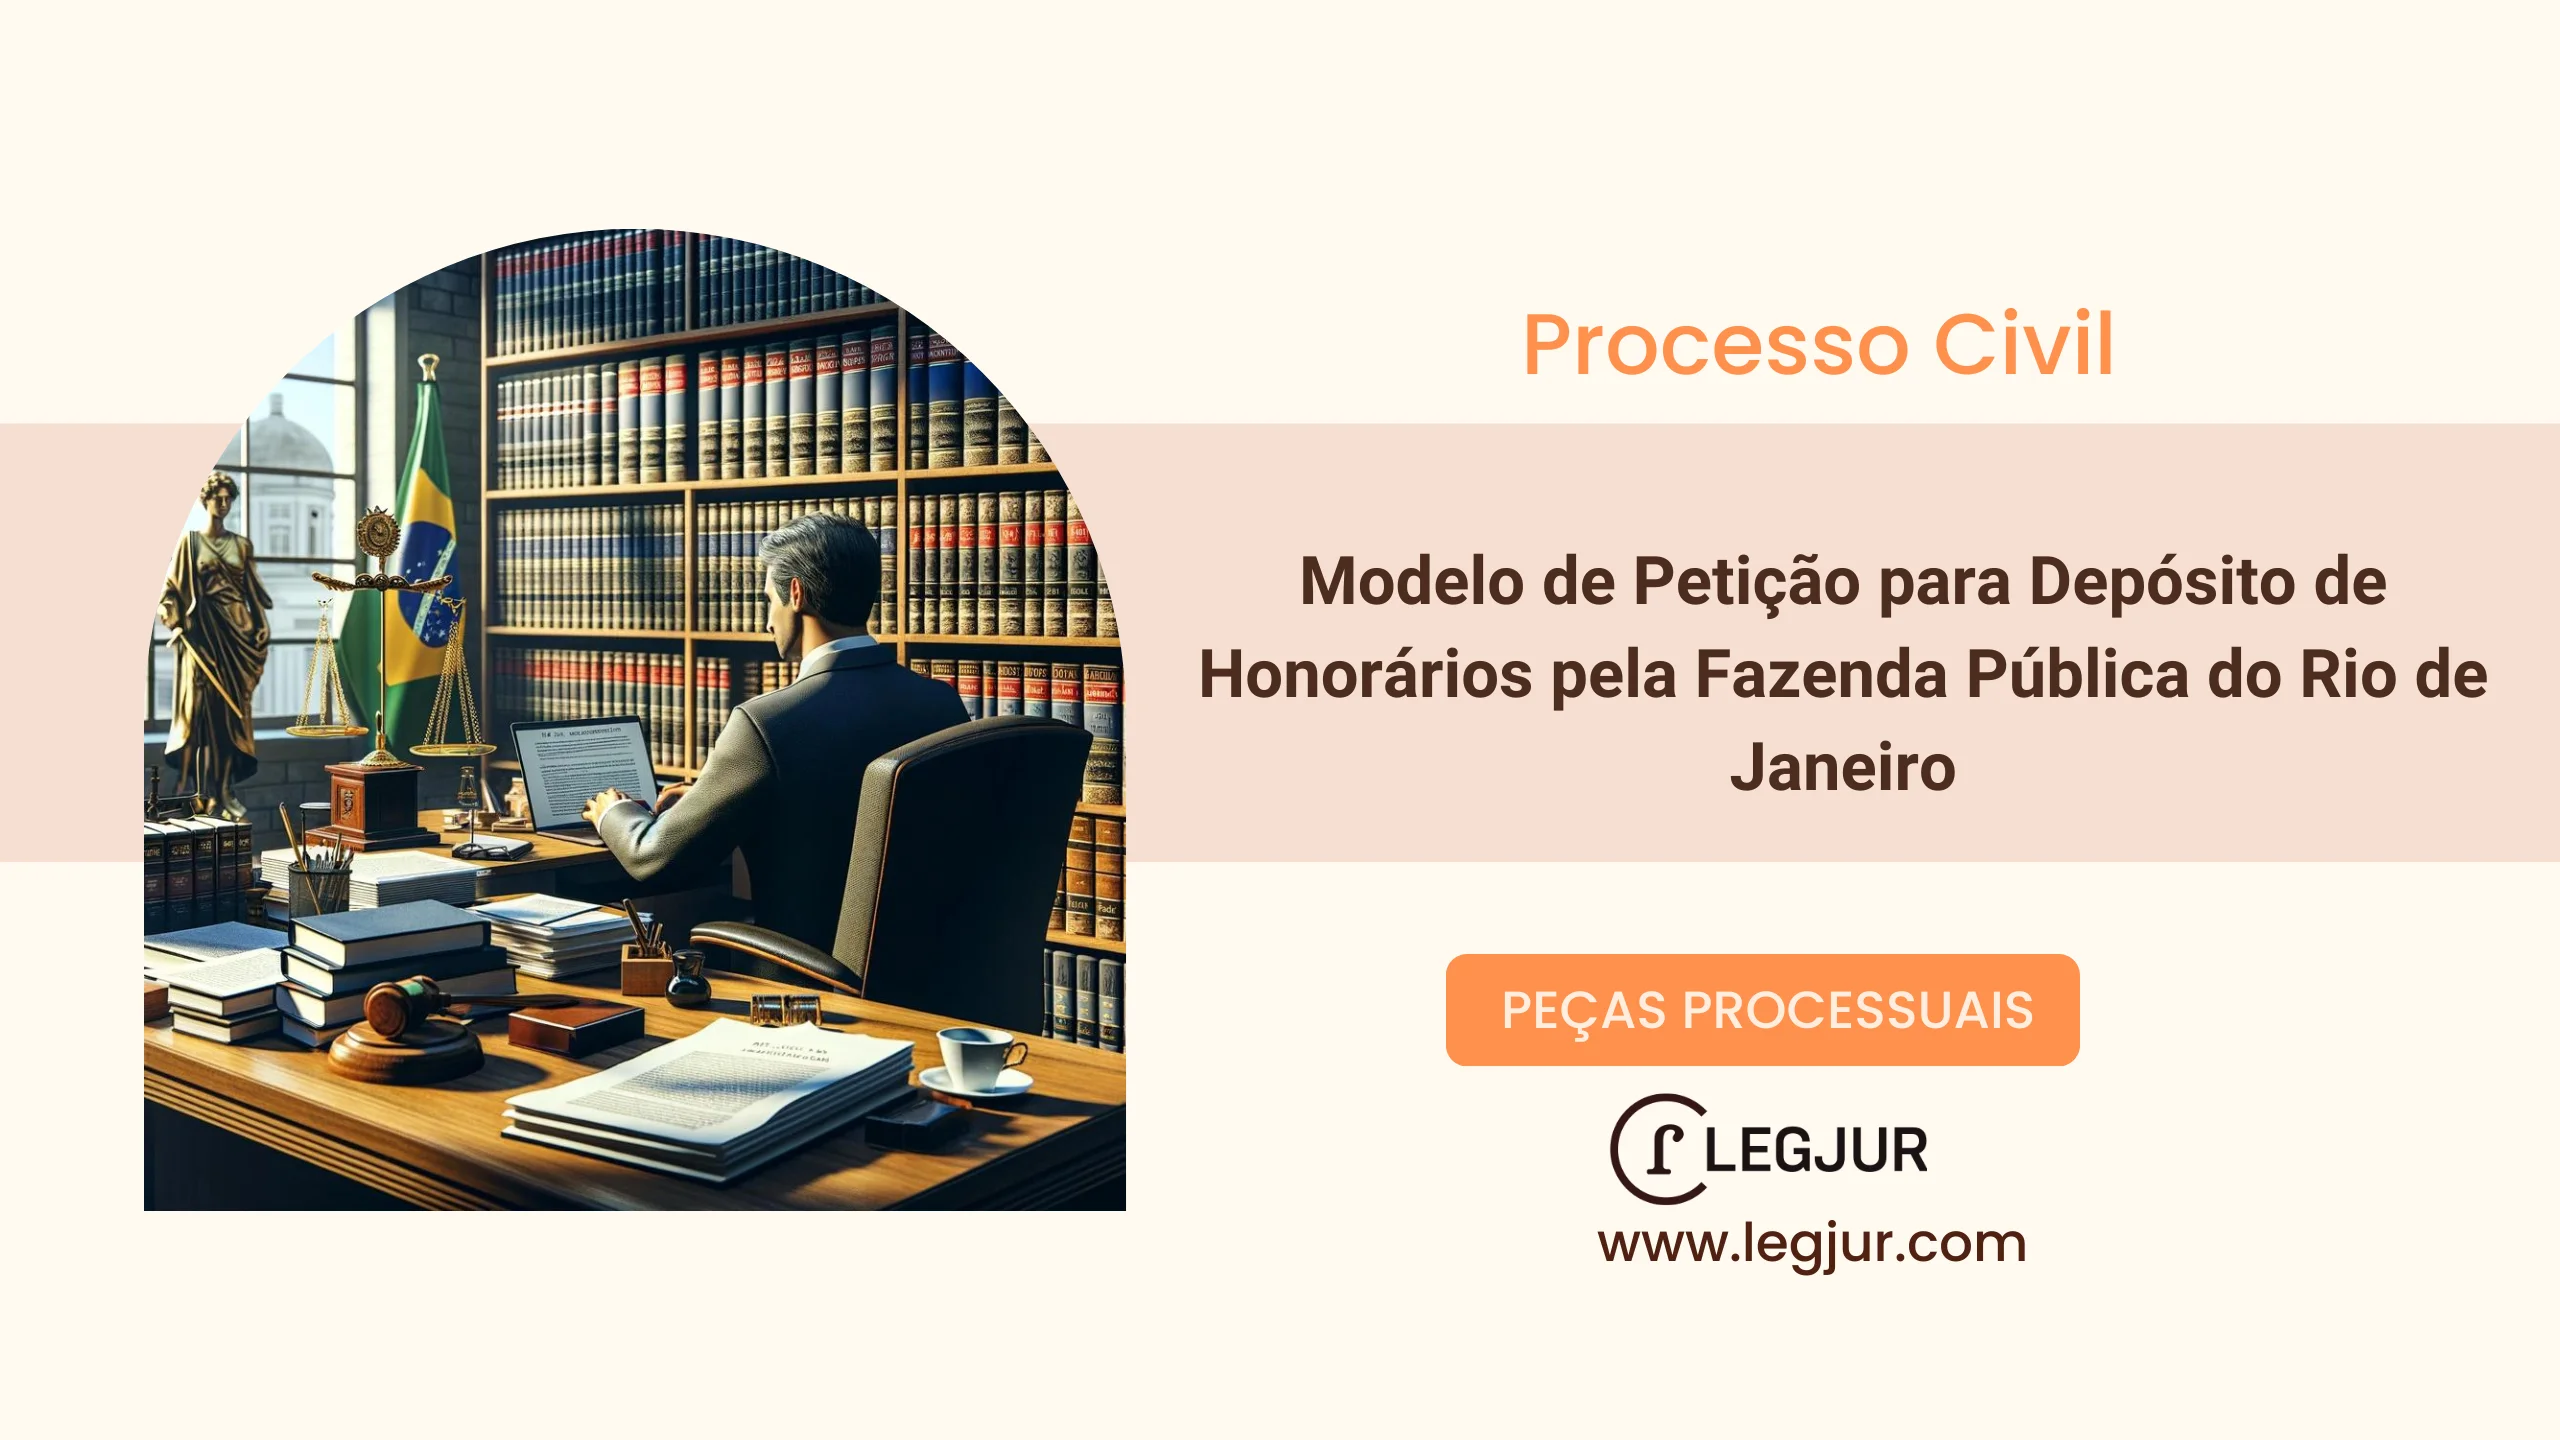 Modelo de Petição para Depósito de Honorários pela Fazenda Pública do Rio de Janeiro